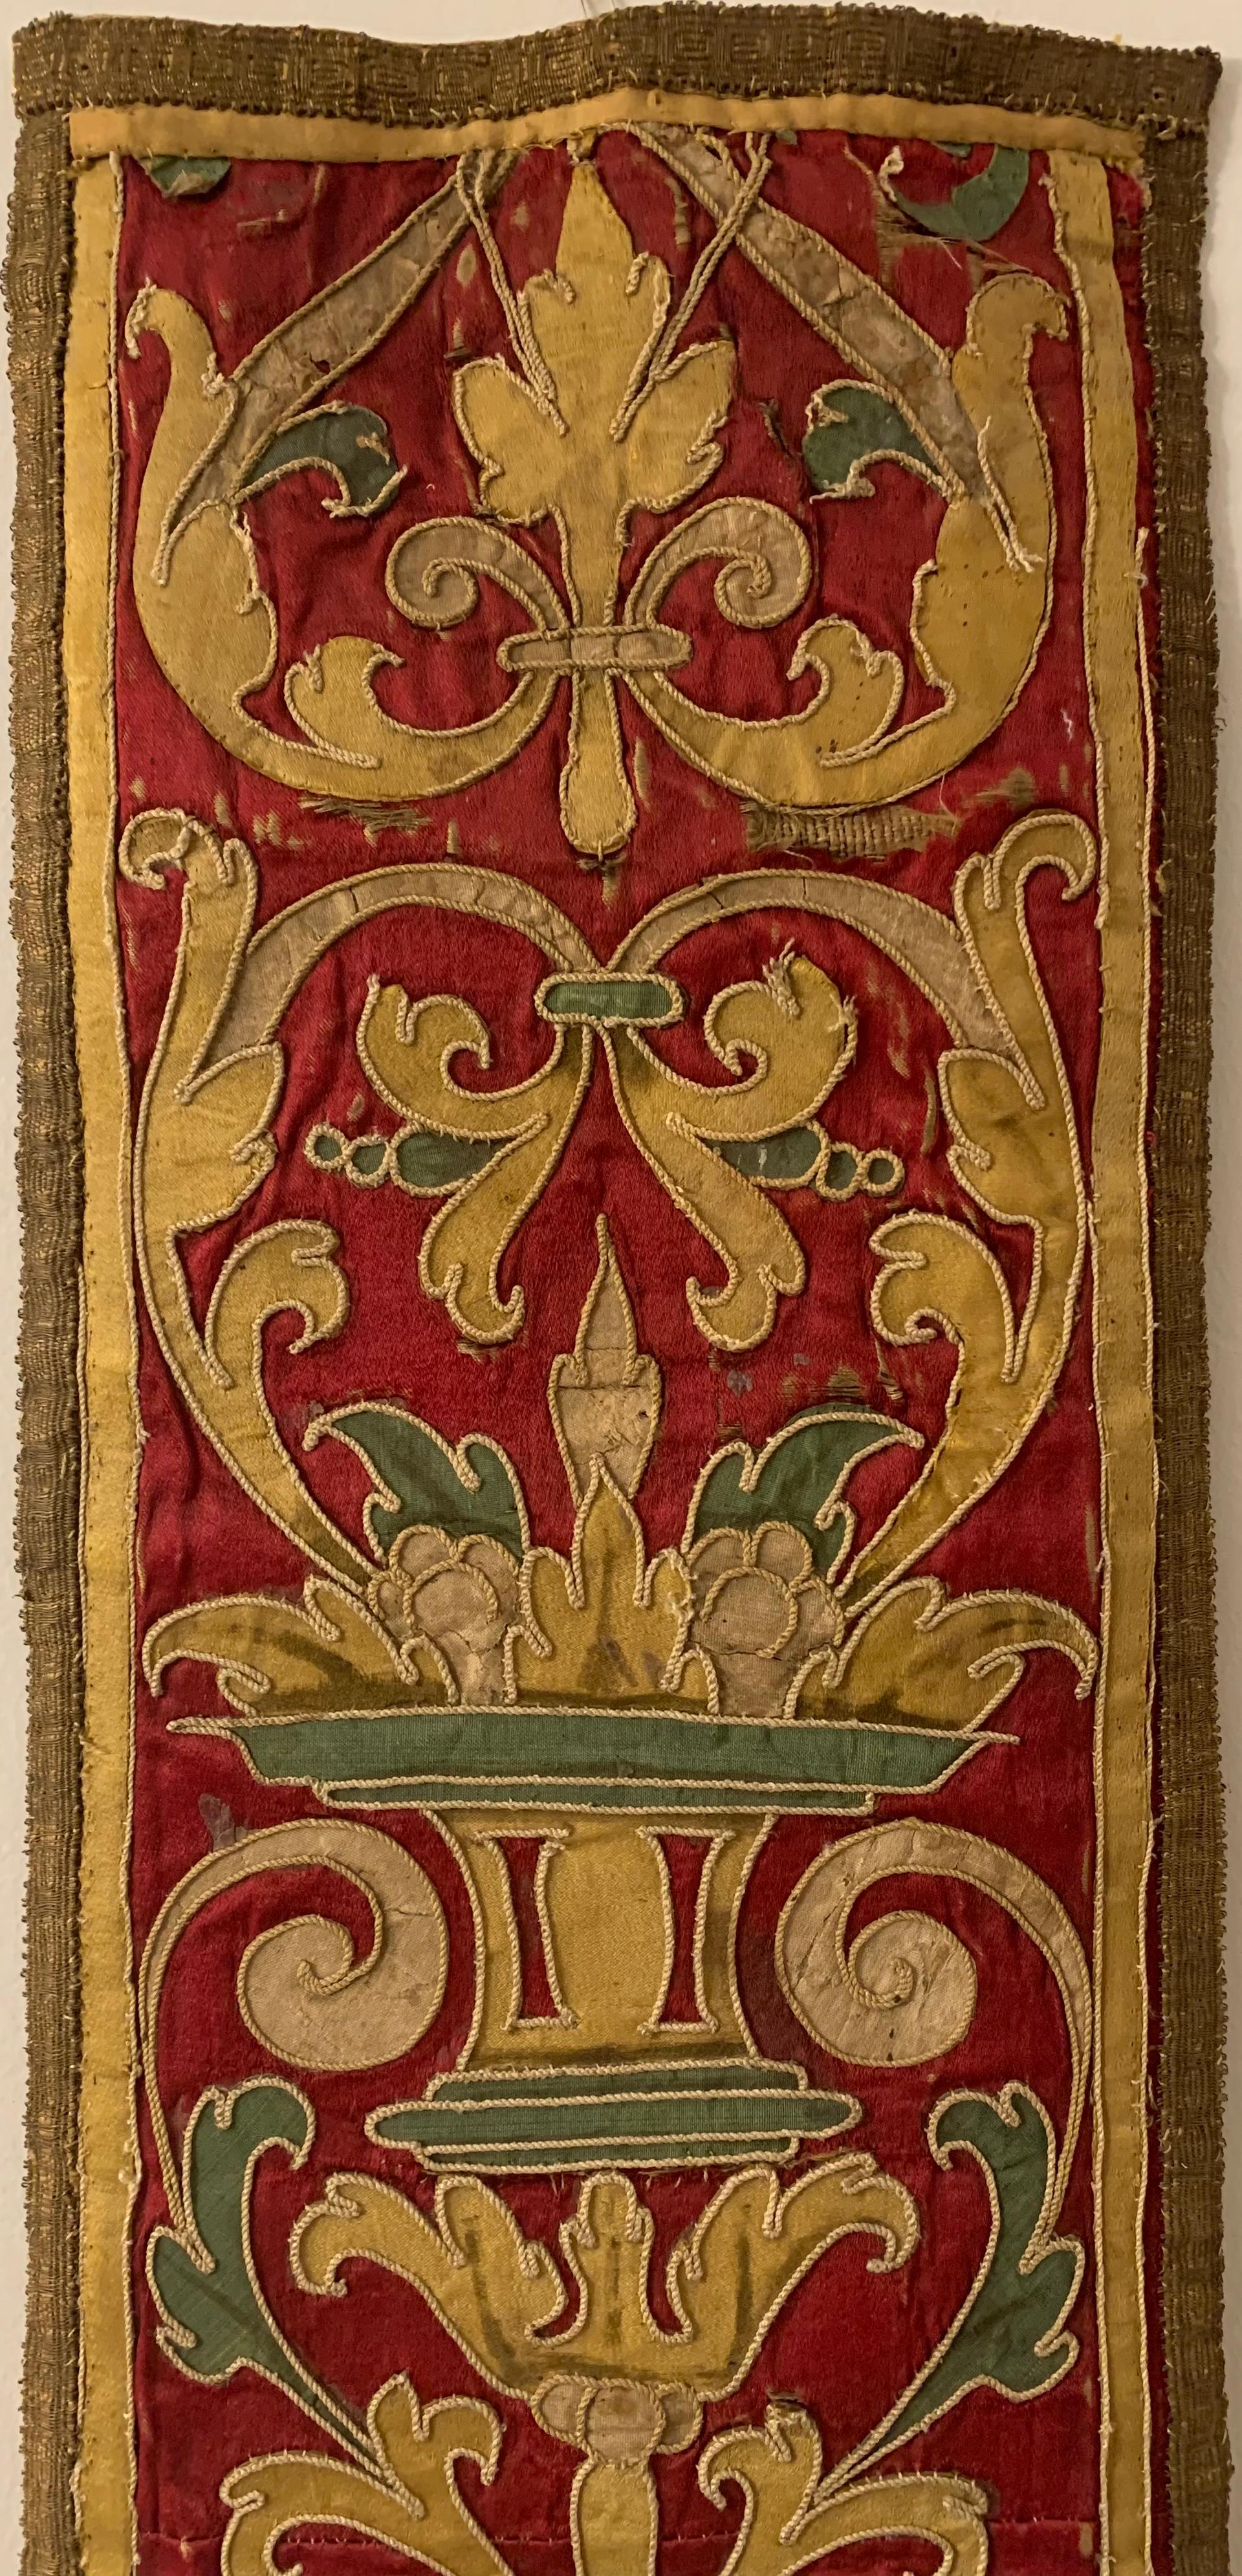 Feine barocke Seiden- und Metallfadenstickerei aus dem 17. Jahrhundert.
Ausgezeichnete leuchtende Farben wie kräftiges Burgunderrot, helles Creme und schönes, elegantes Teal mit einem Rand aus strukturiertem, gewebtem Metallfaden. Ungewöhnlich